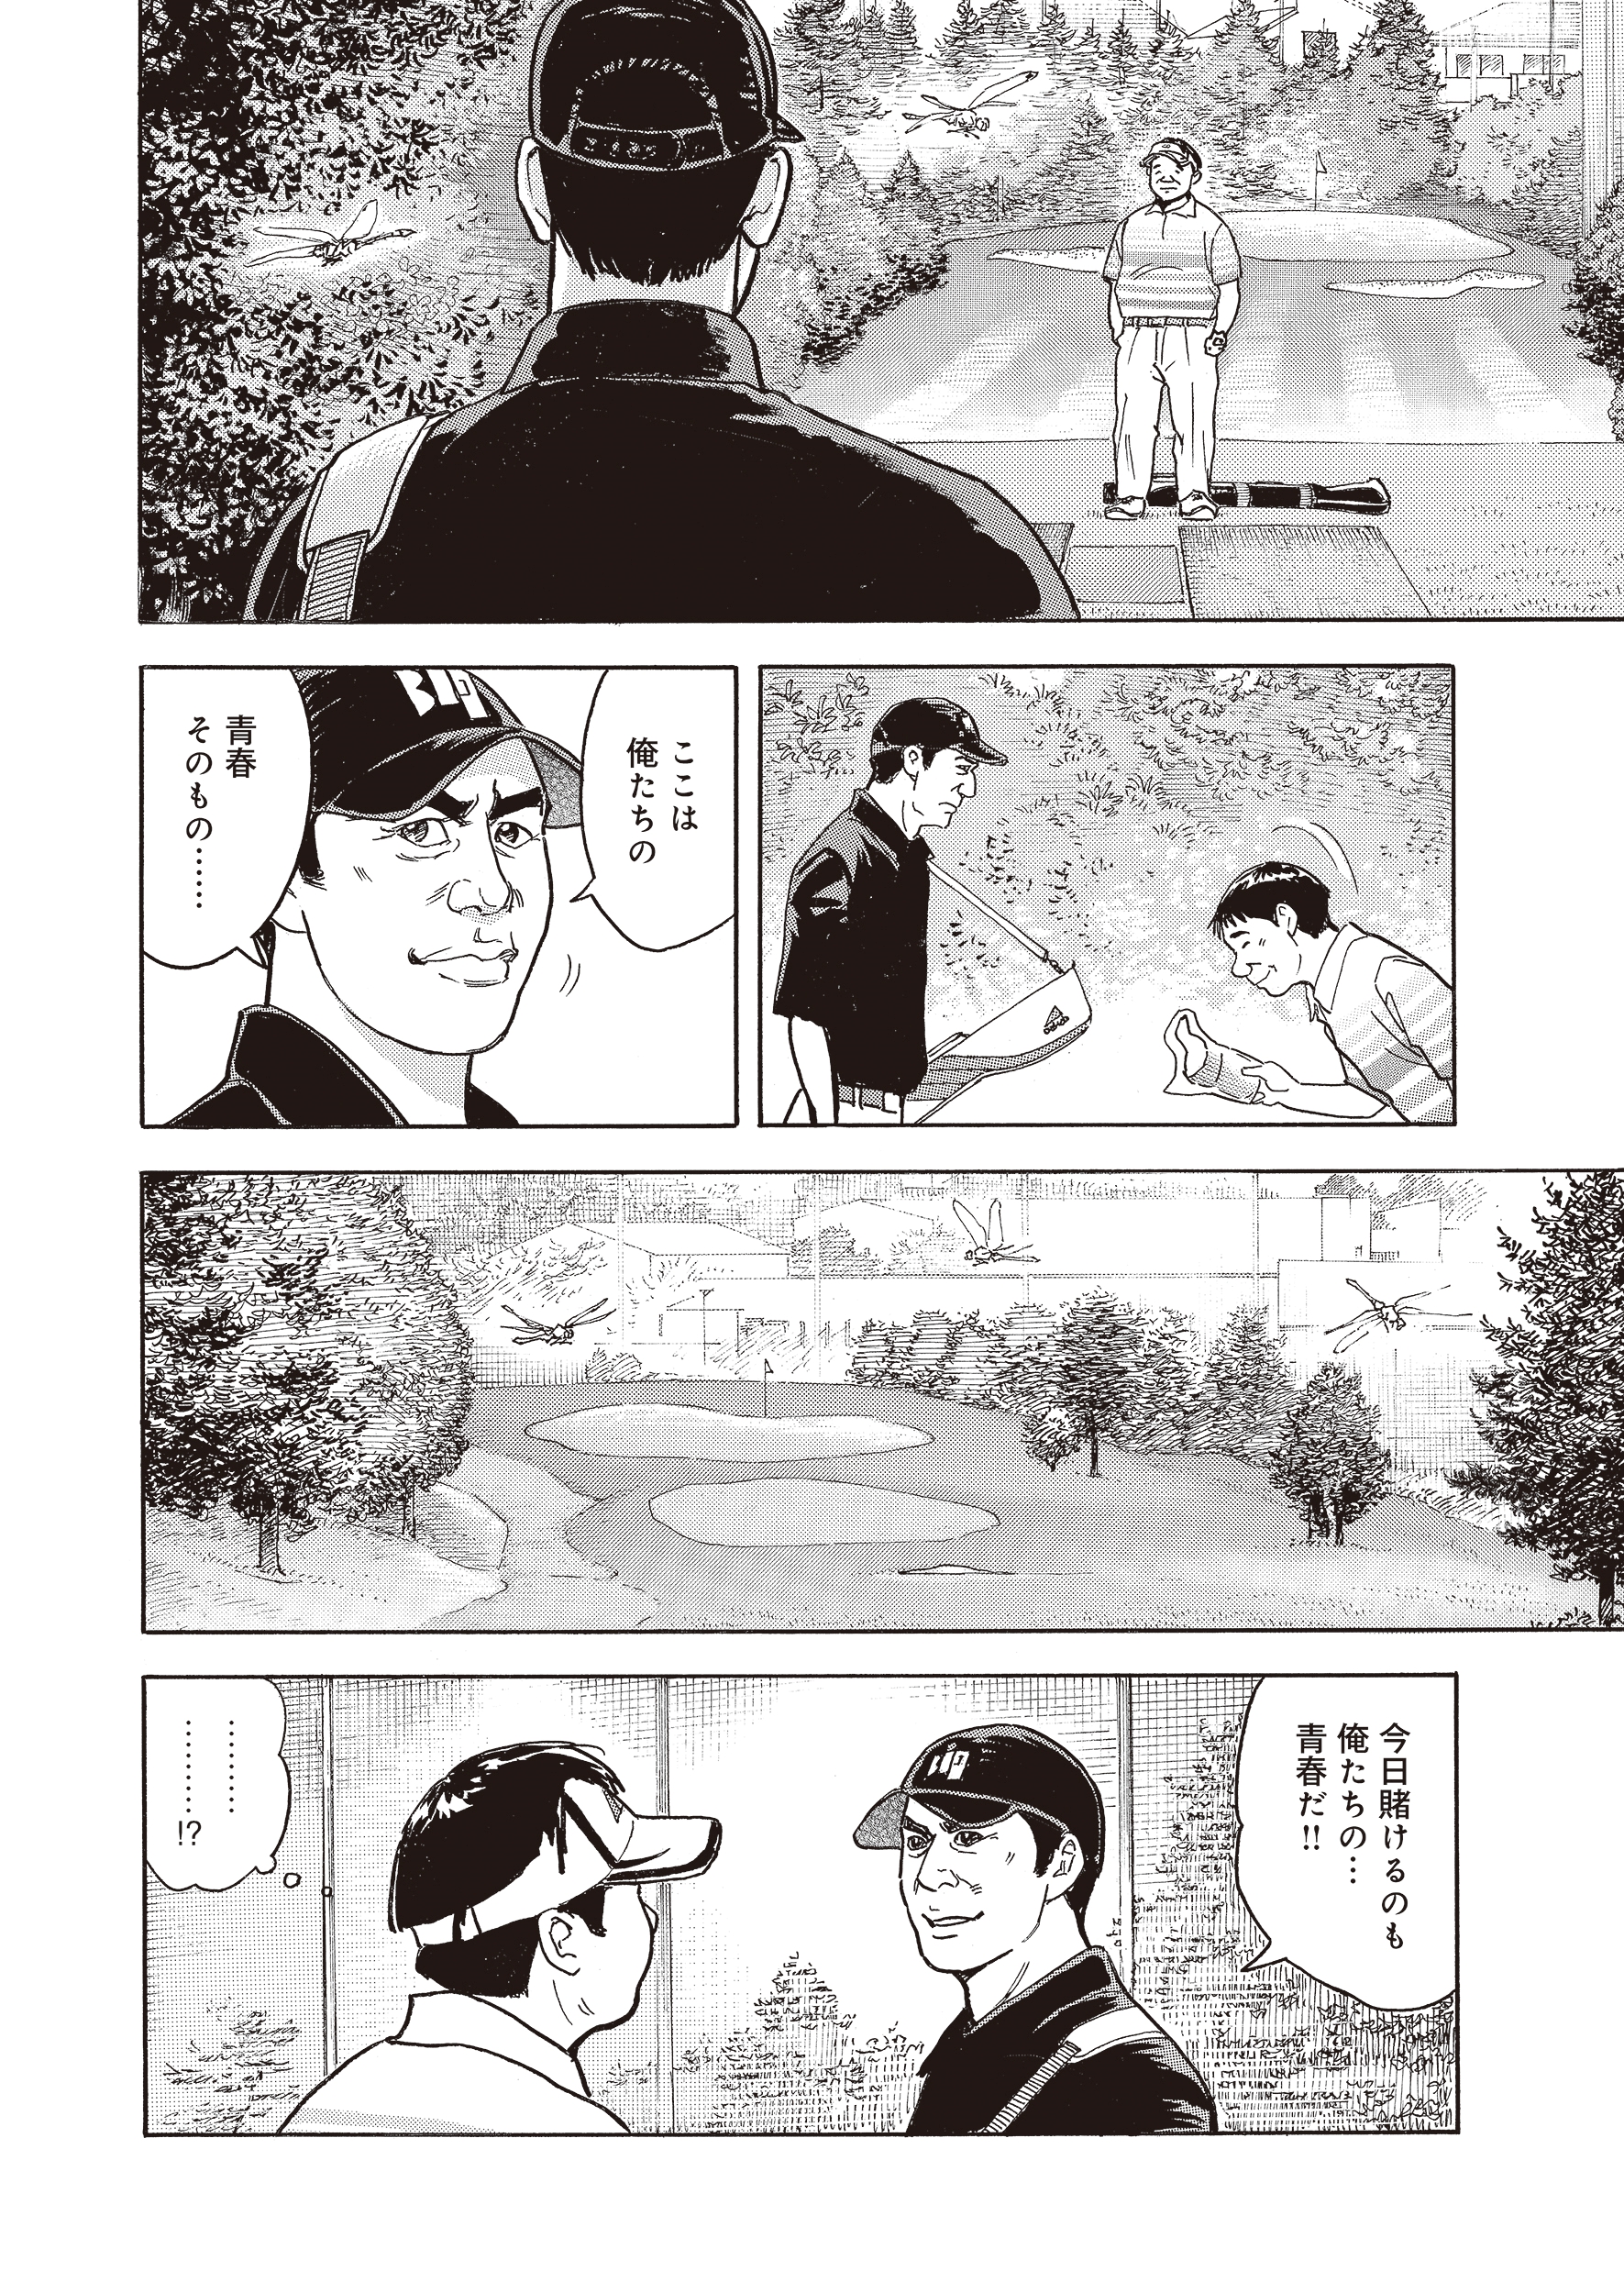 101勝目の約束【後編】(ゴルフの花道vol.6)